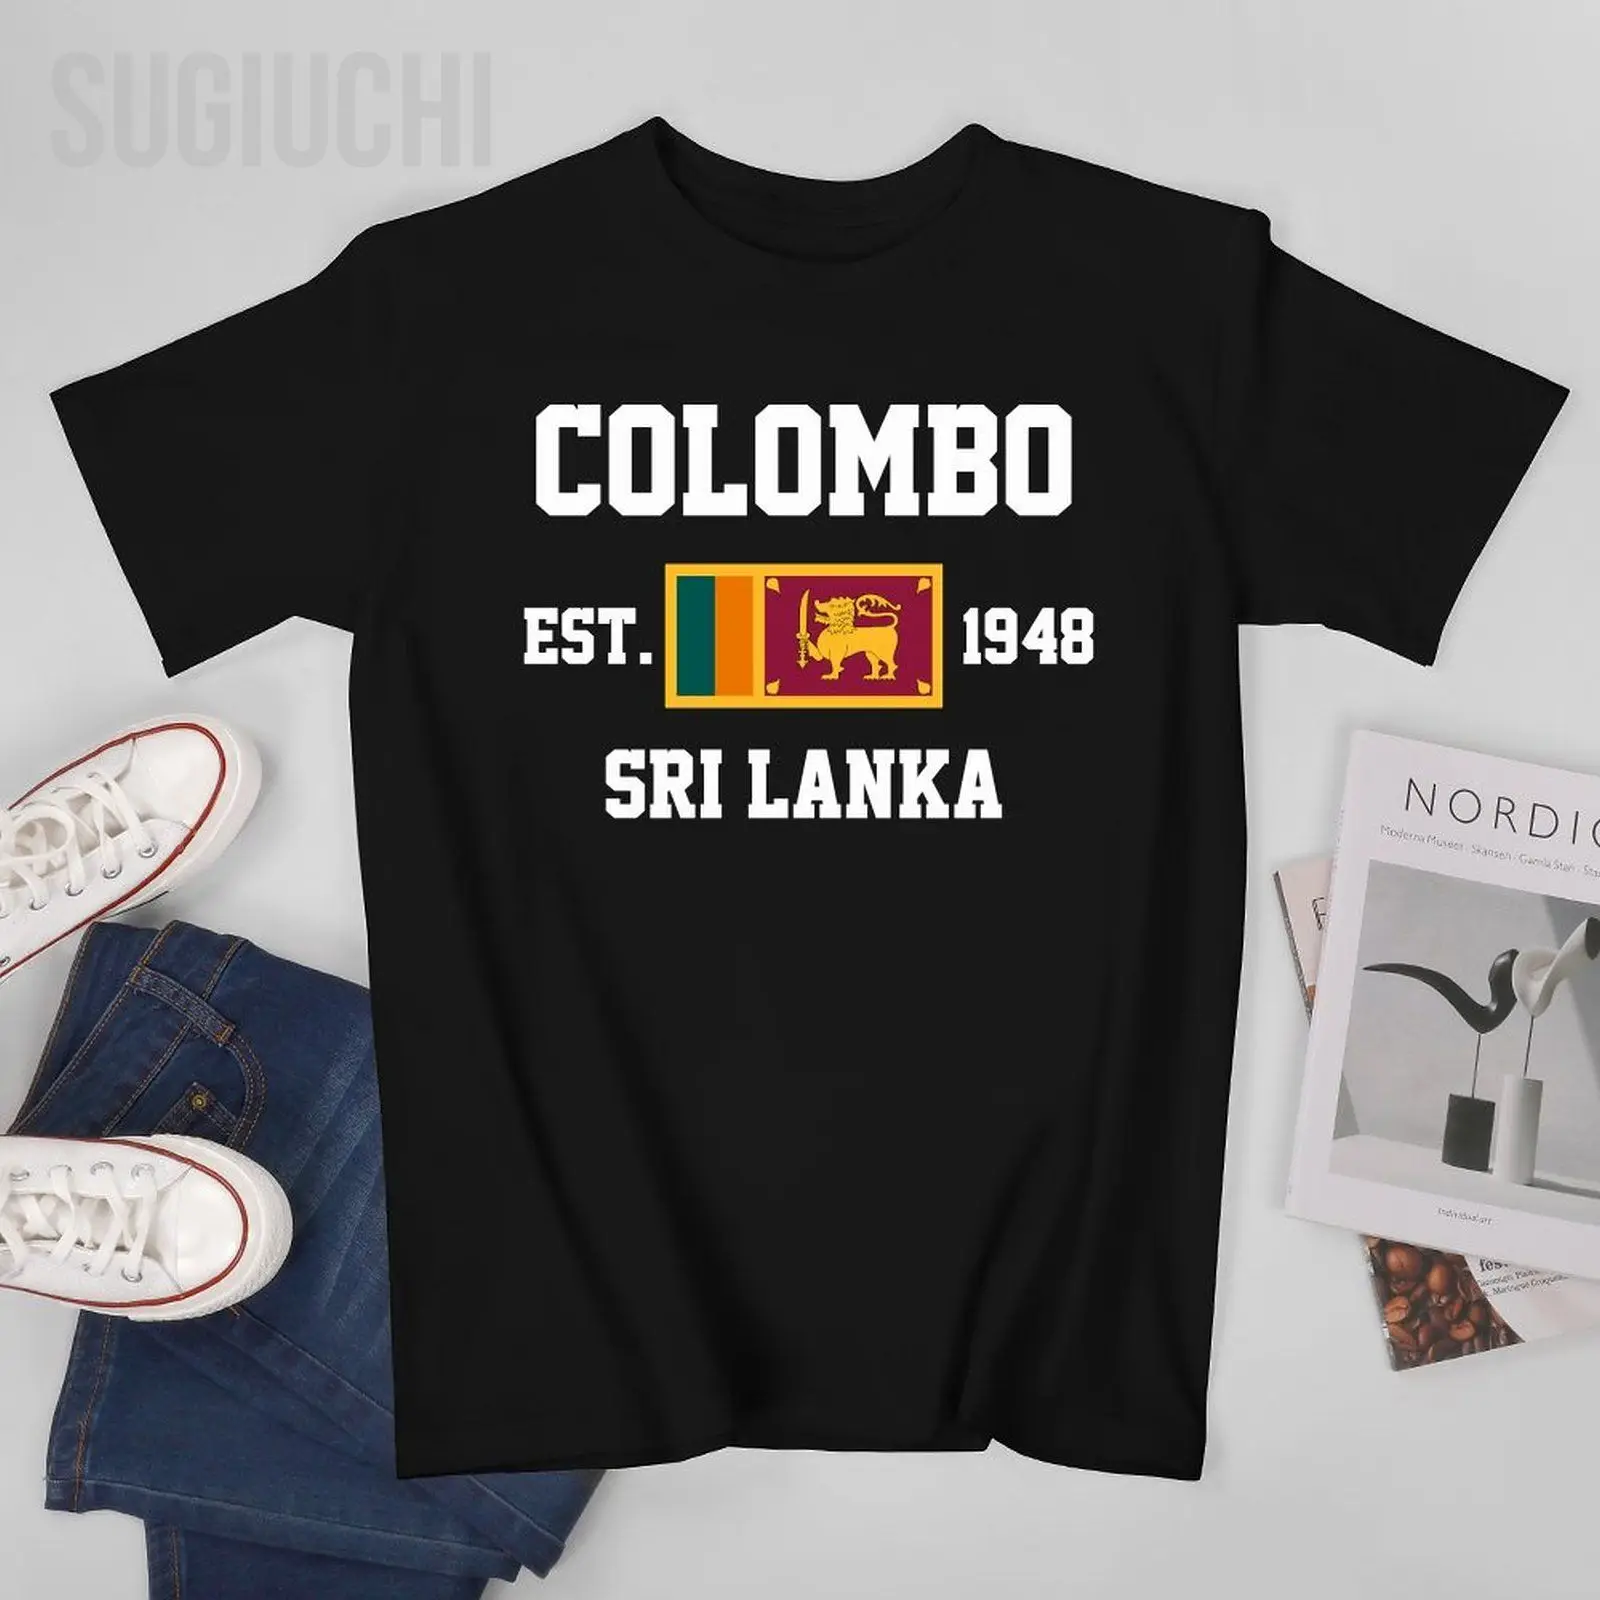 Флаг Шри-Ланки 1948 г. Коломбо Мужская футболка Тройники Футболка С круглым вырезом Футболки Женская Одежда для мальчиков 100% Хлопок